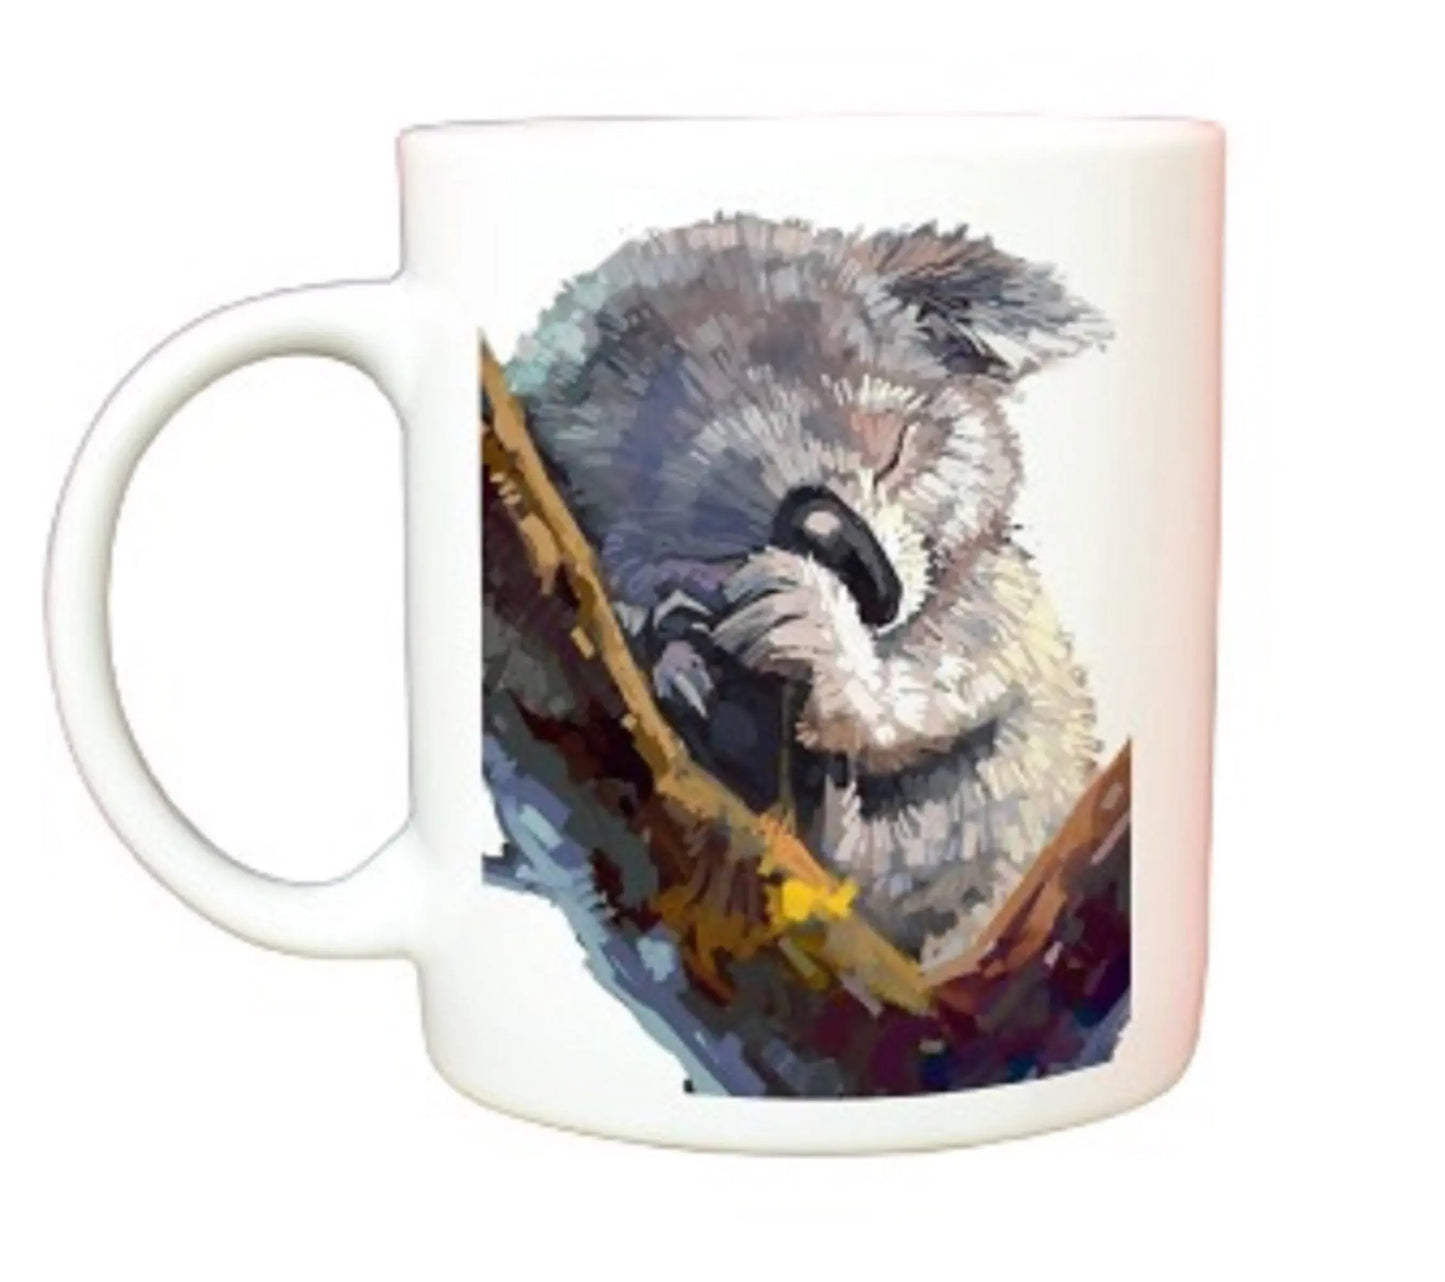  Austrailian Koala Bear Mug by Free Spirit Accessories sold by Free Spirit Accessories